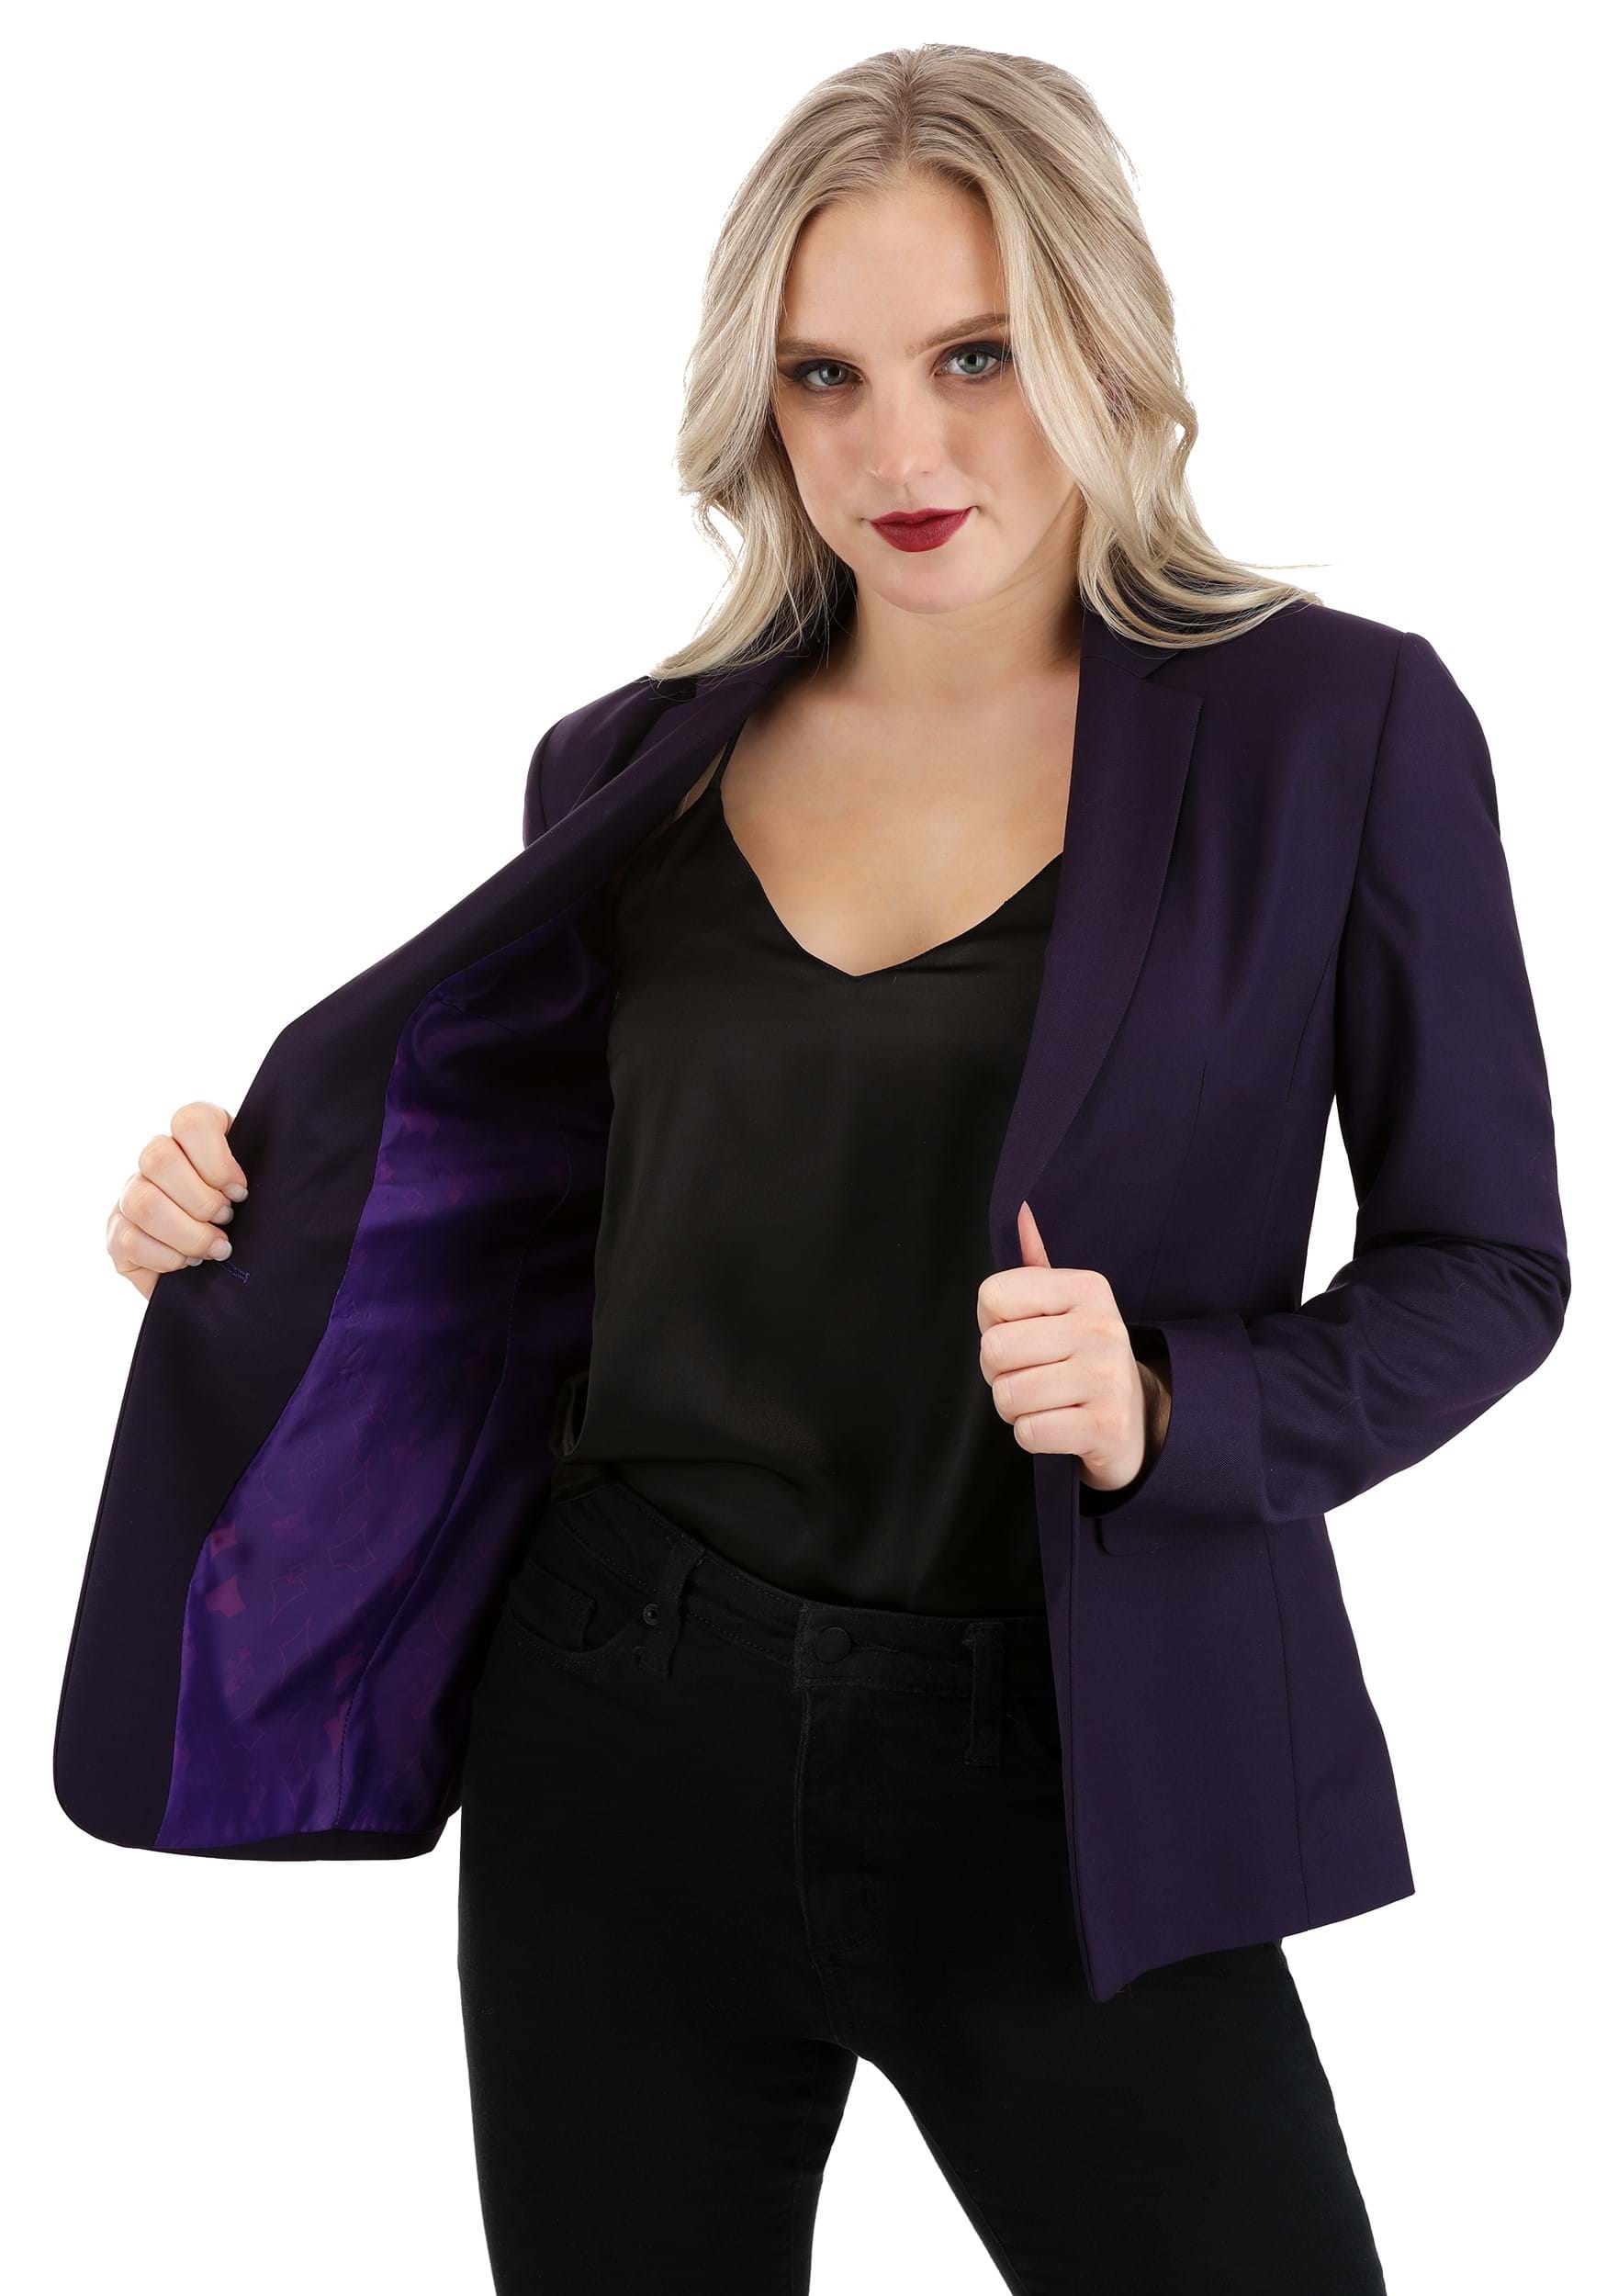 Photos - Fancy Dress Knight FUN Suits Dark  Women's Joker Blazer Purple 